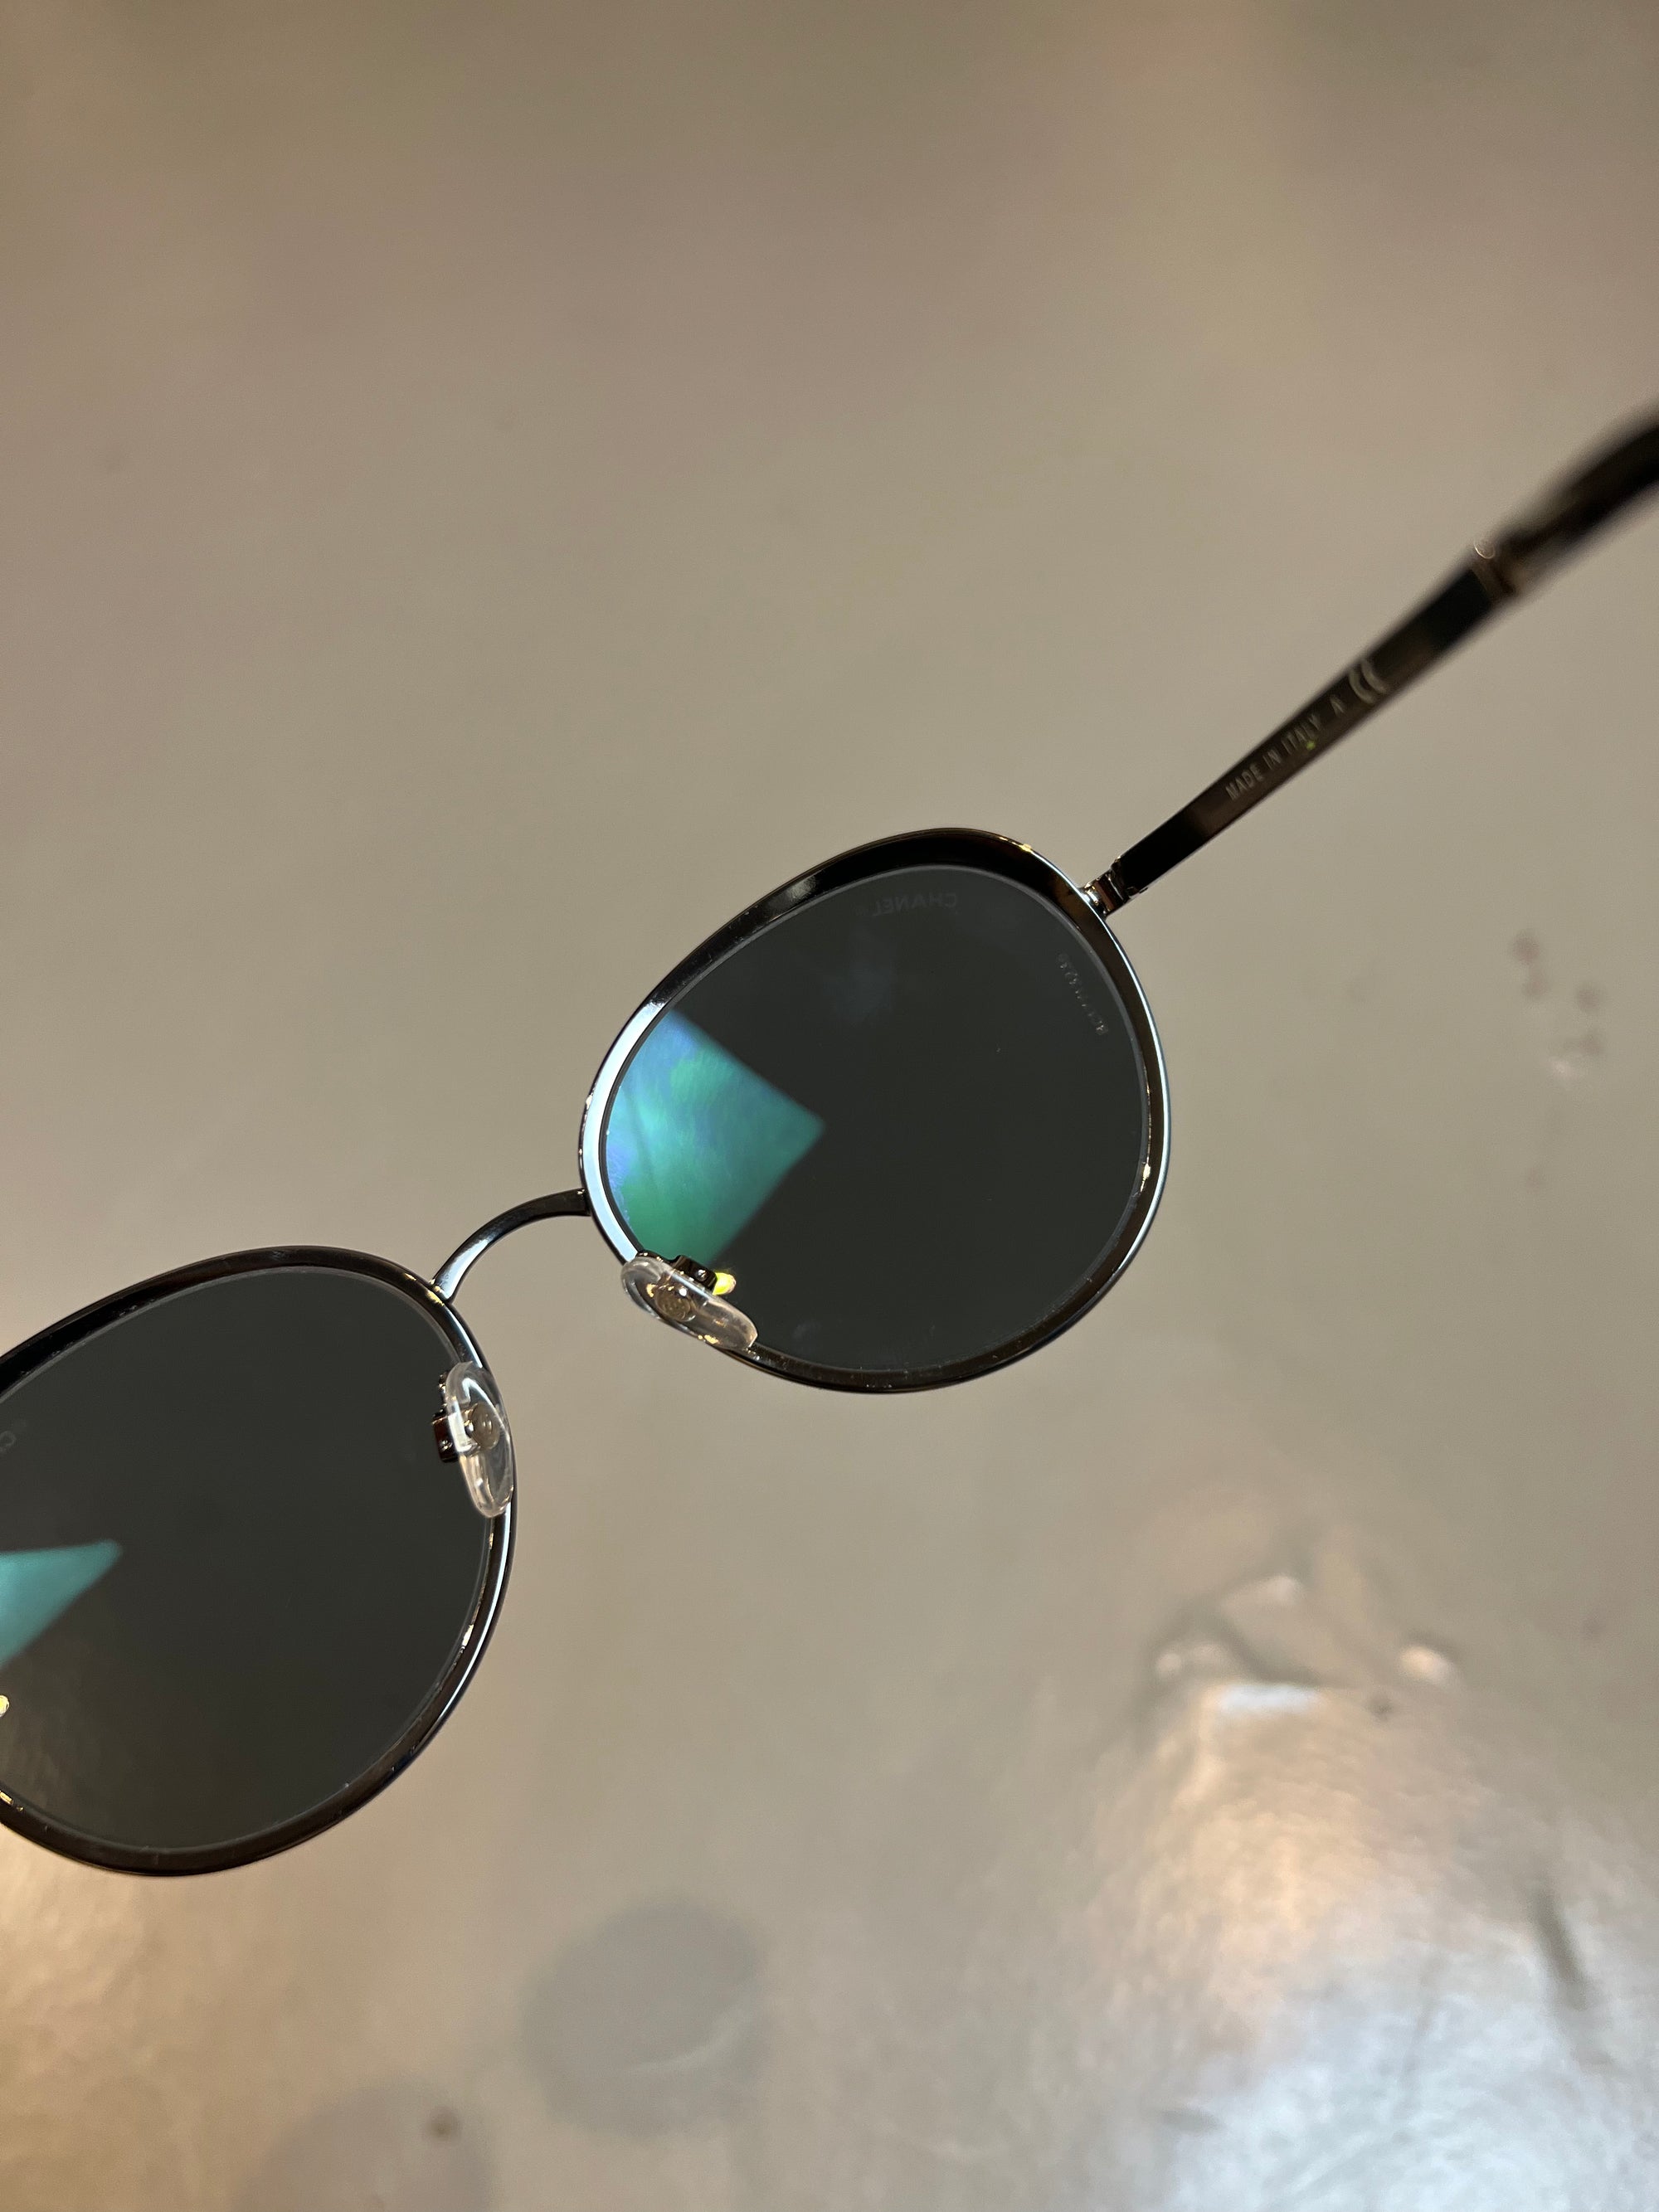 Detail-Produktbild einer runden Chanel Sonnenbrille in schwarz vor grauem Hintergrund.